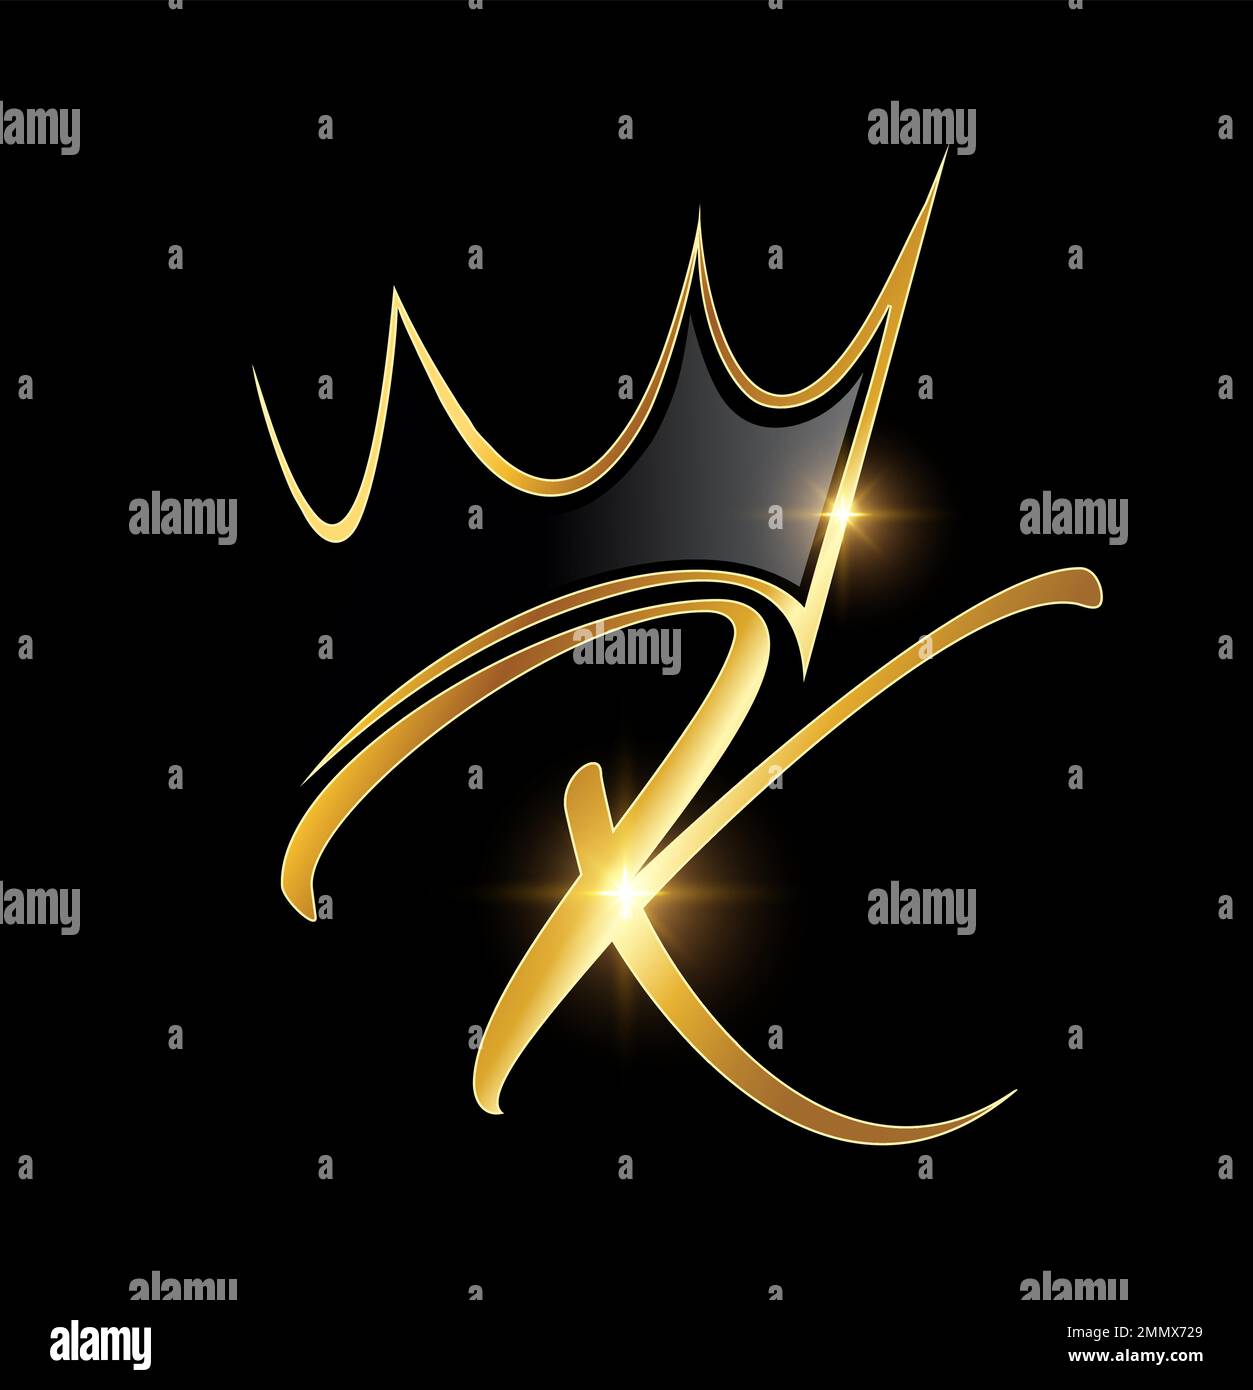 Vektordarstellung des Anfangsbuchstabens K im Gold Crown- und Leaf-Monogramm auf schwarzem Hintergrund mit goldenem Glanzeffekt Stock Vektor